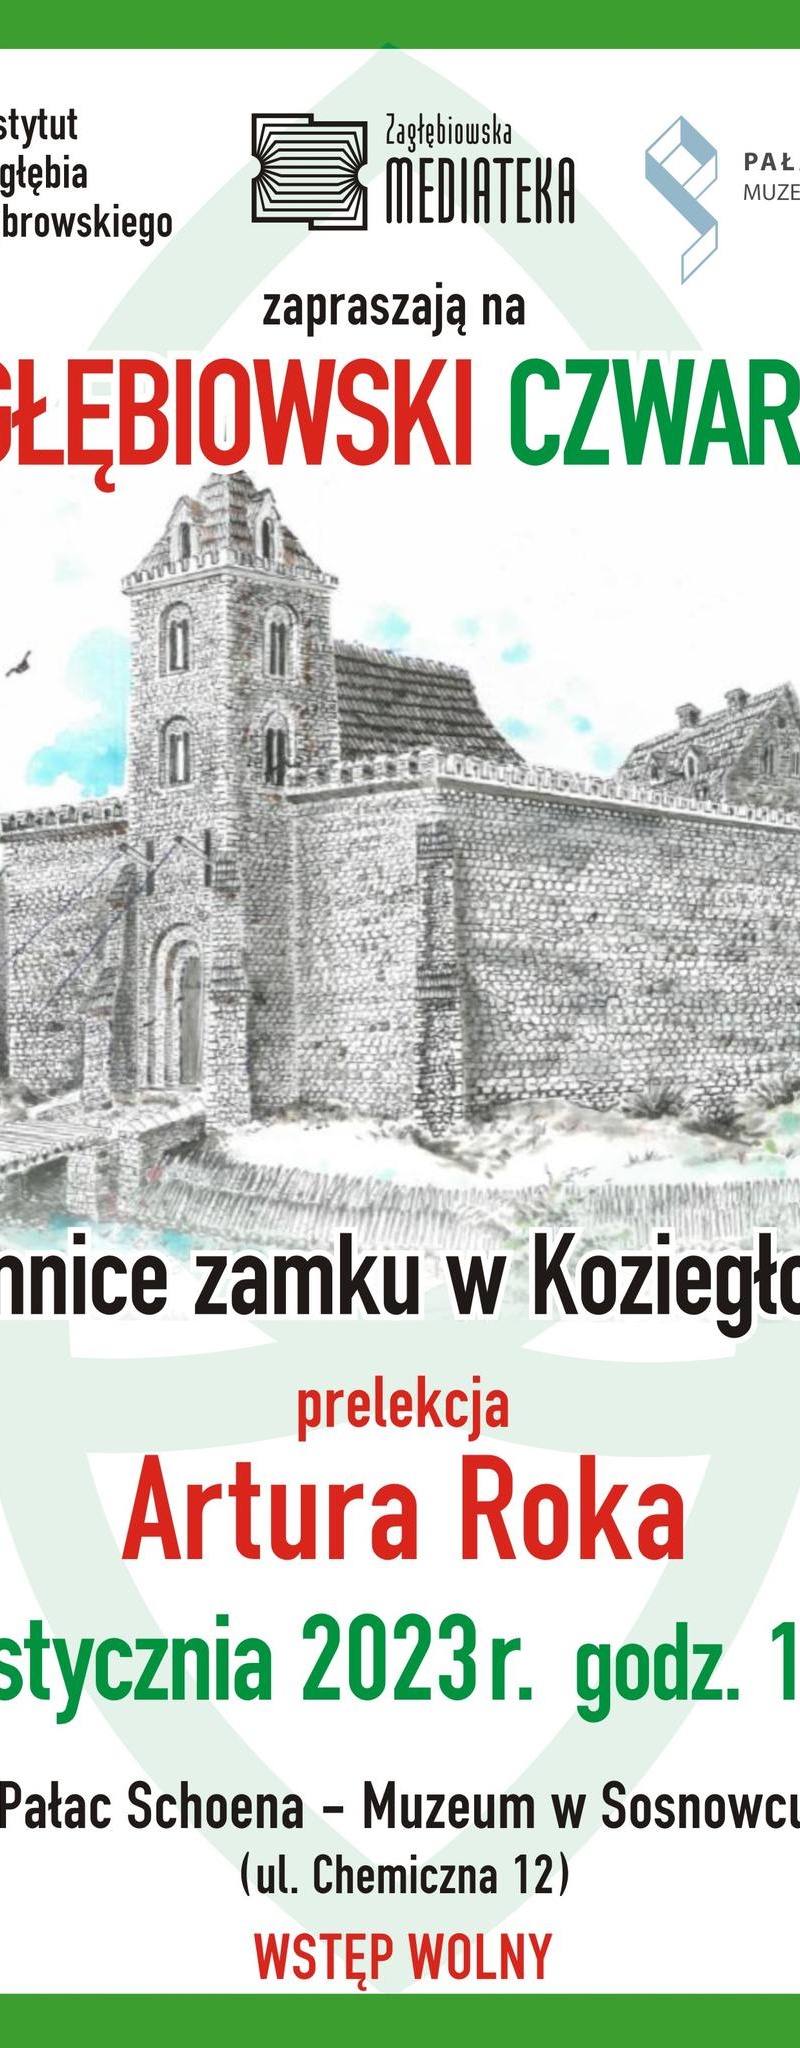 Zagłębiowski Czwartek – Tajemnice zamku w Koziegłowach